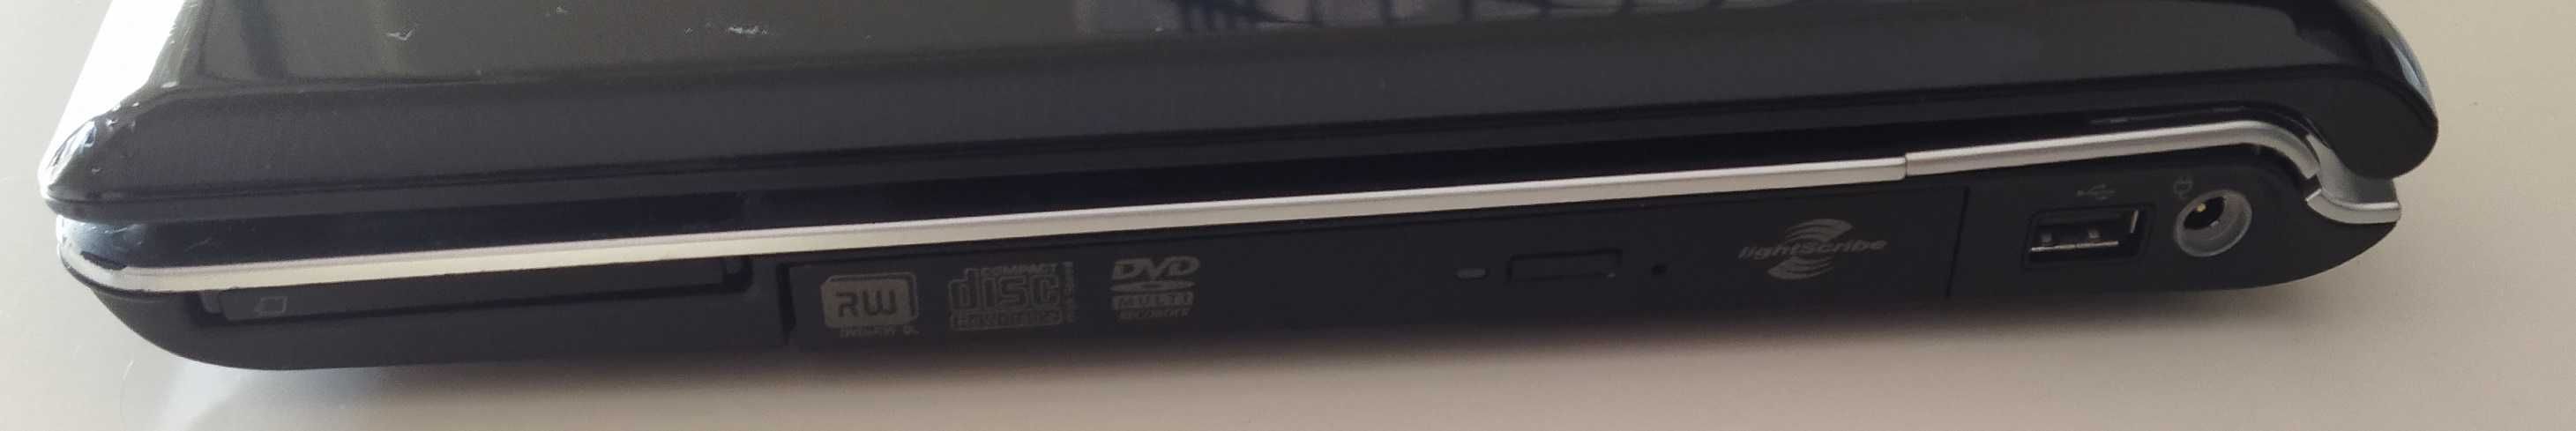 HP DV6000 (DV6357EA)